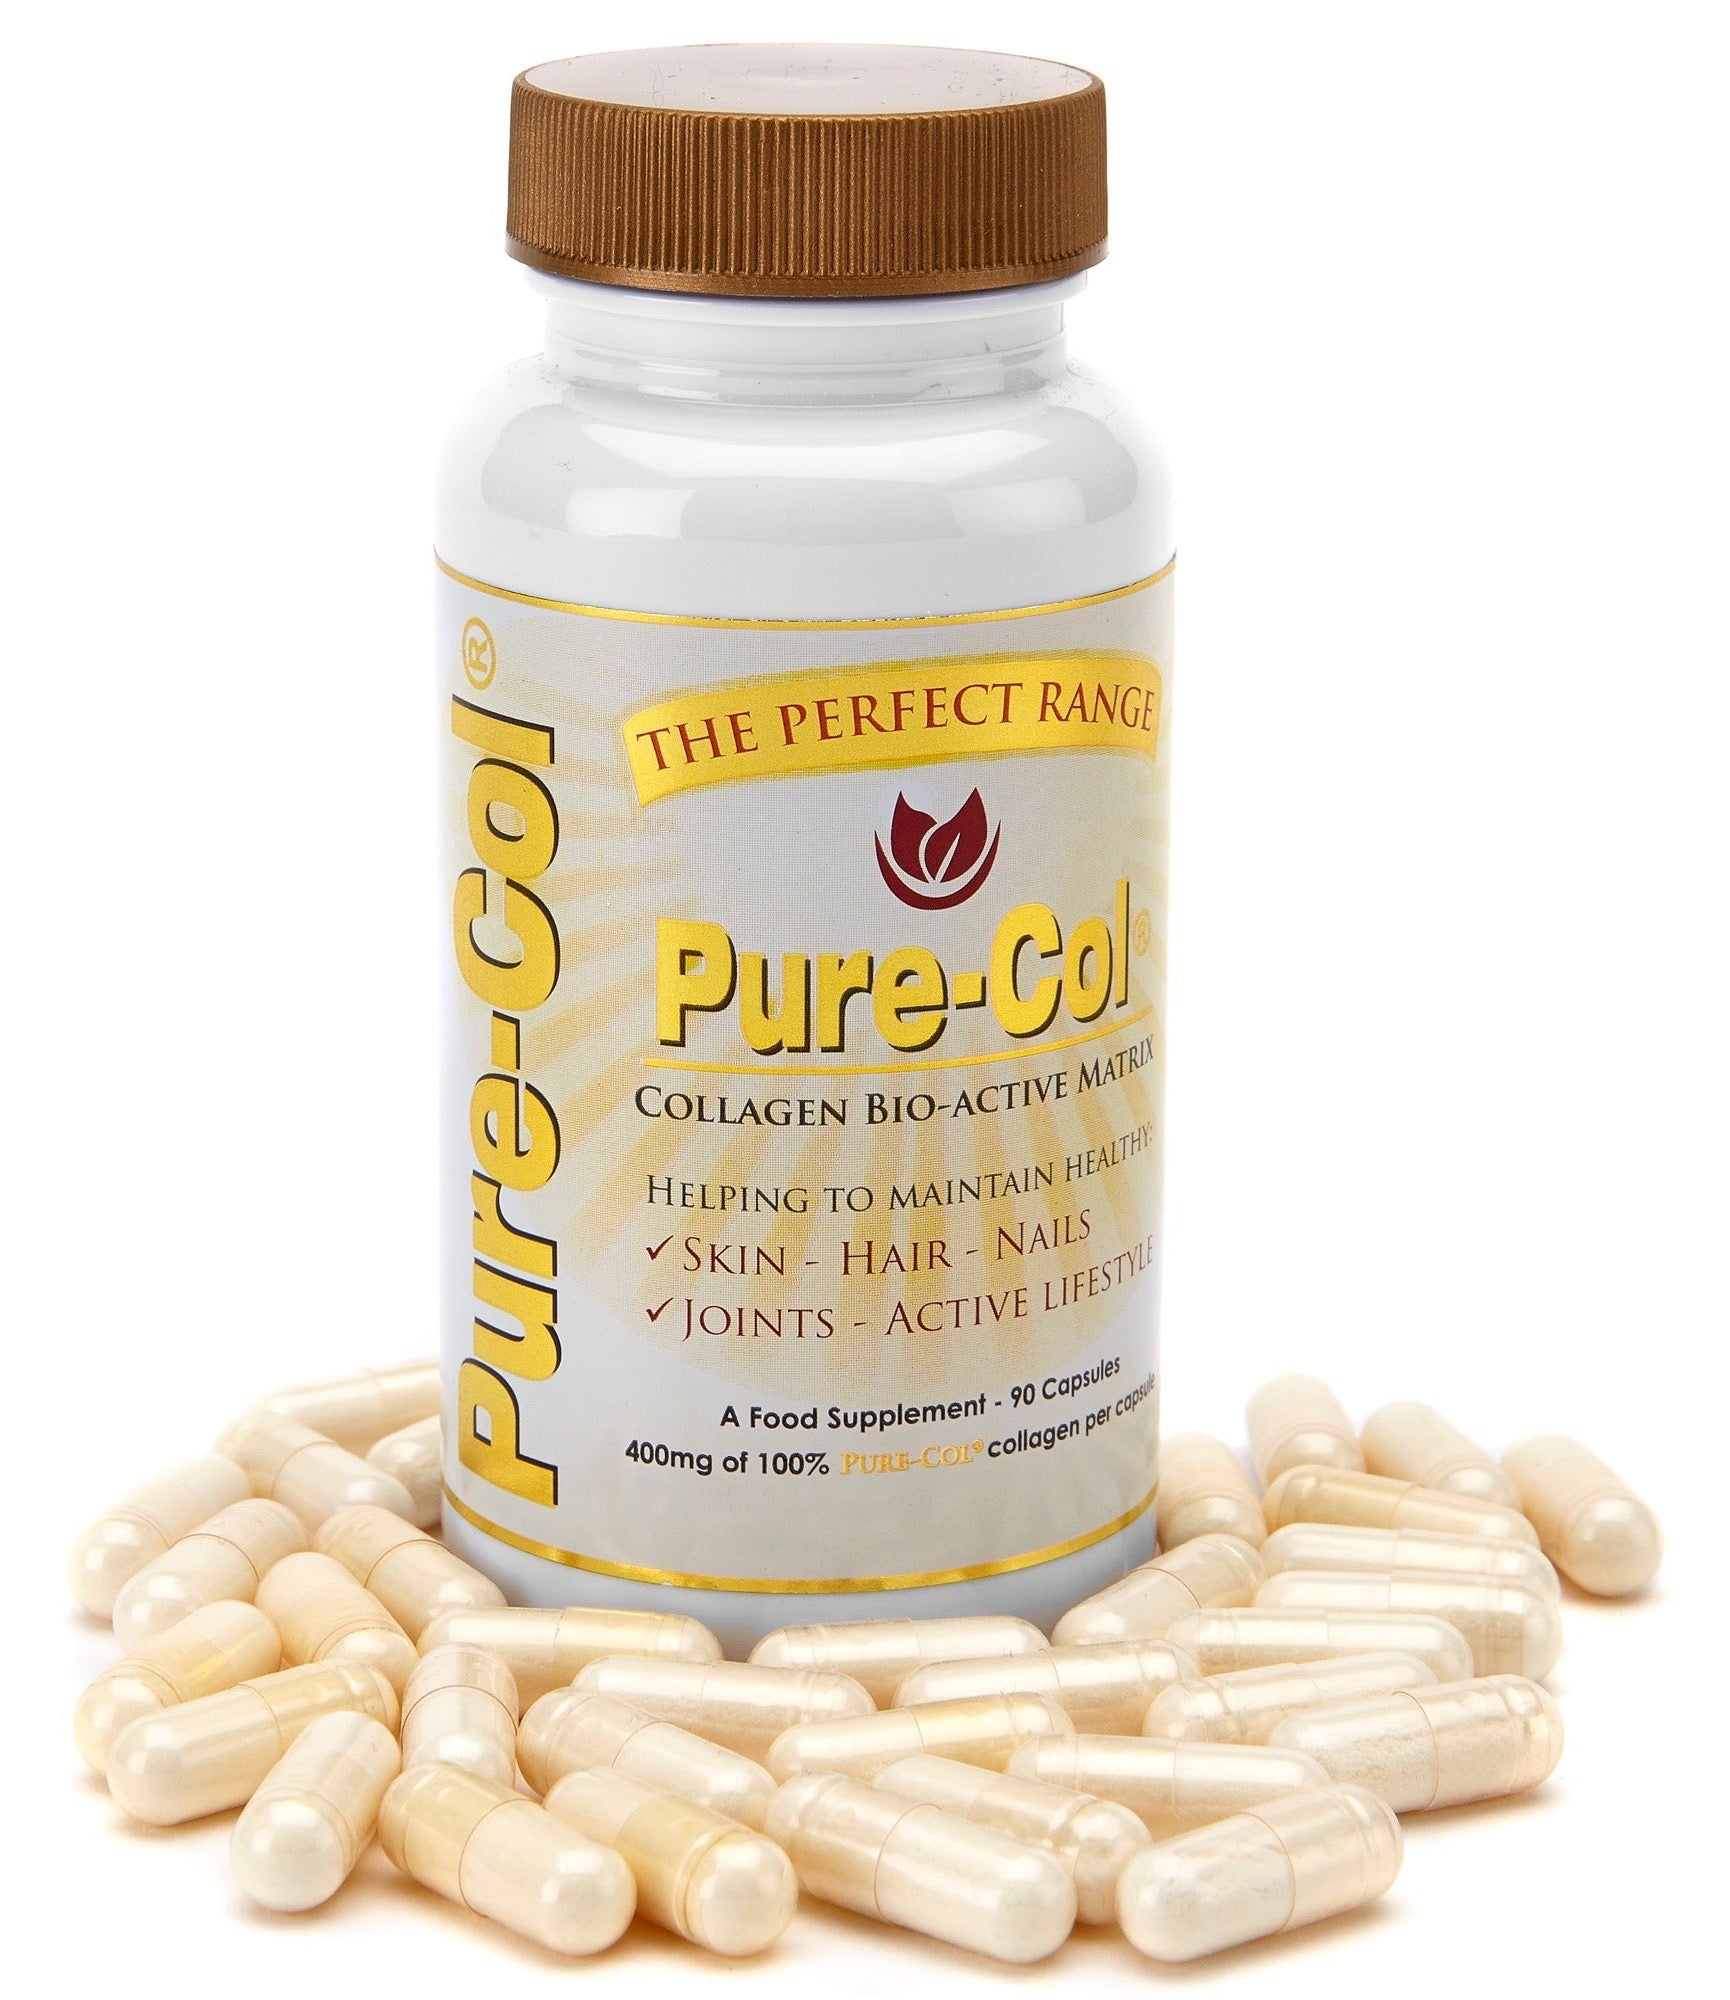 Pure-Col Collagen -  Pure collagen supplement